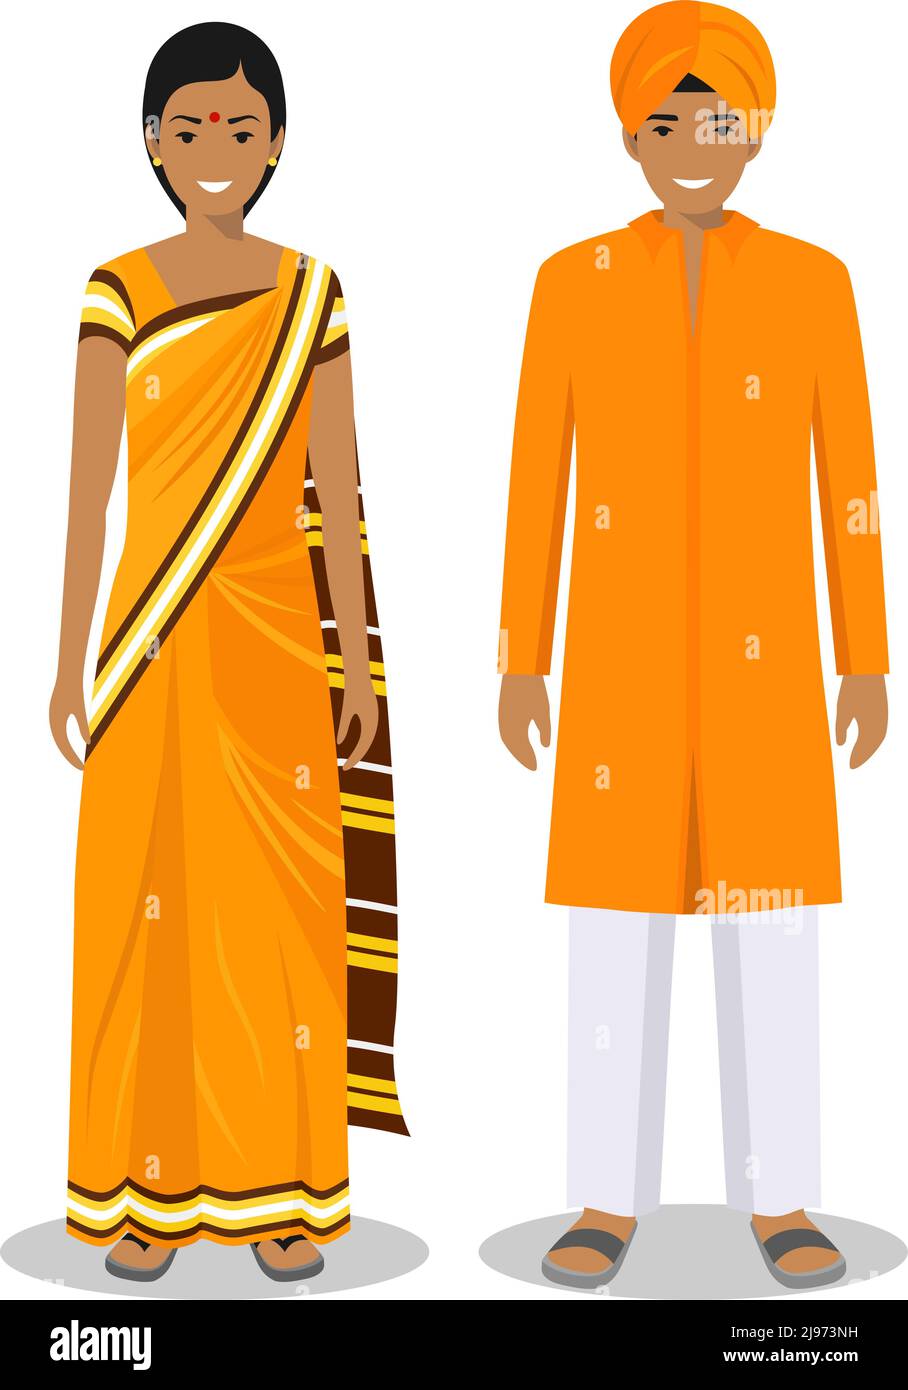 Detaillierte Darstellung von stehenden indianern in der traditionellen nationalen indischen Kleidung isoliert auf weißem Hintergrund in flachem Stil. Stock Vektor